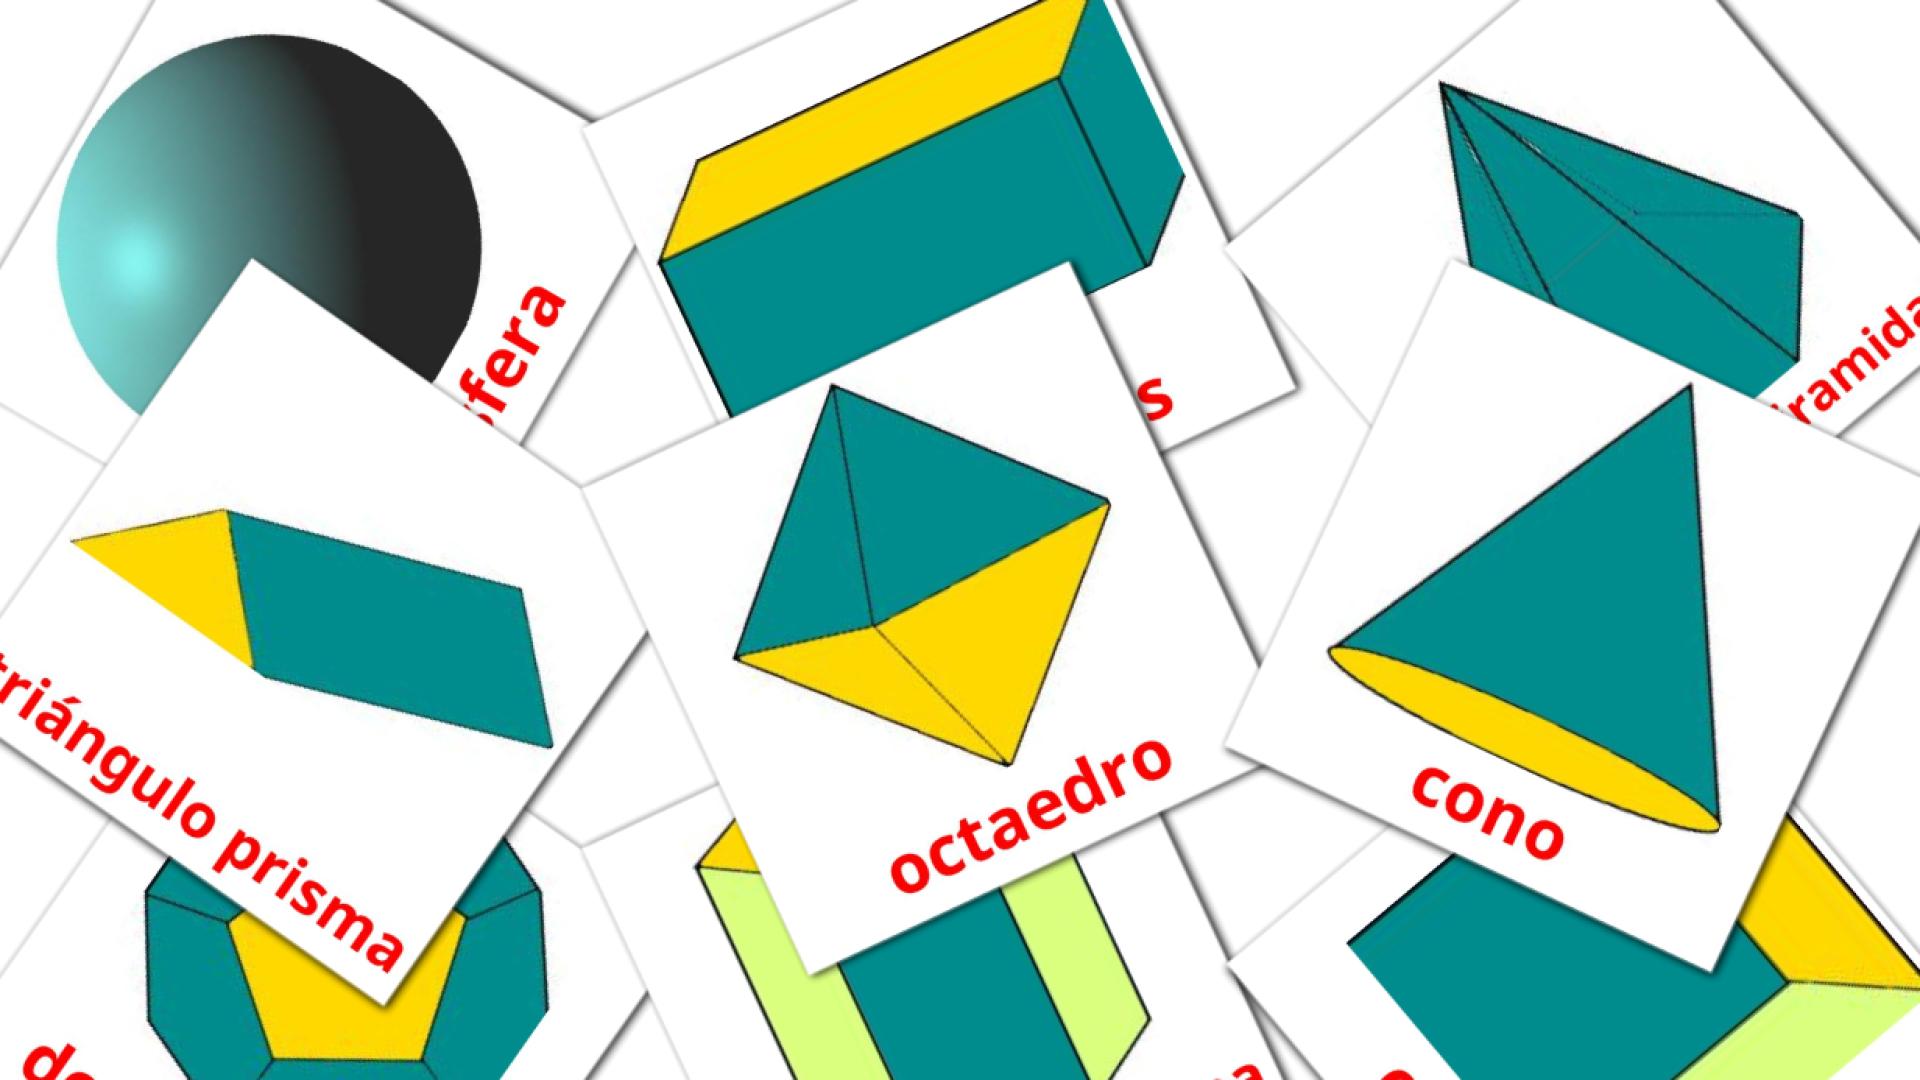 Formen 3D - Albanisch Vokabelkarten